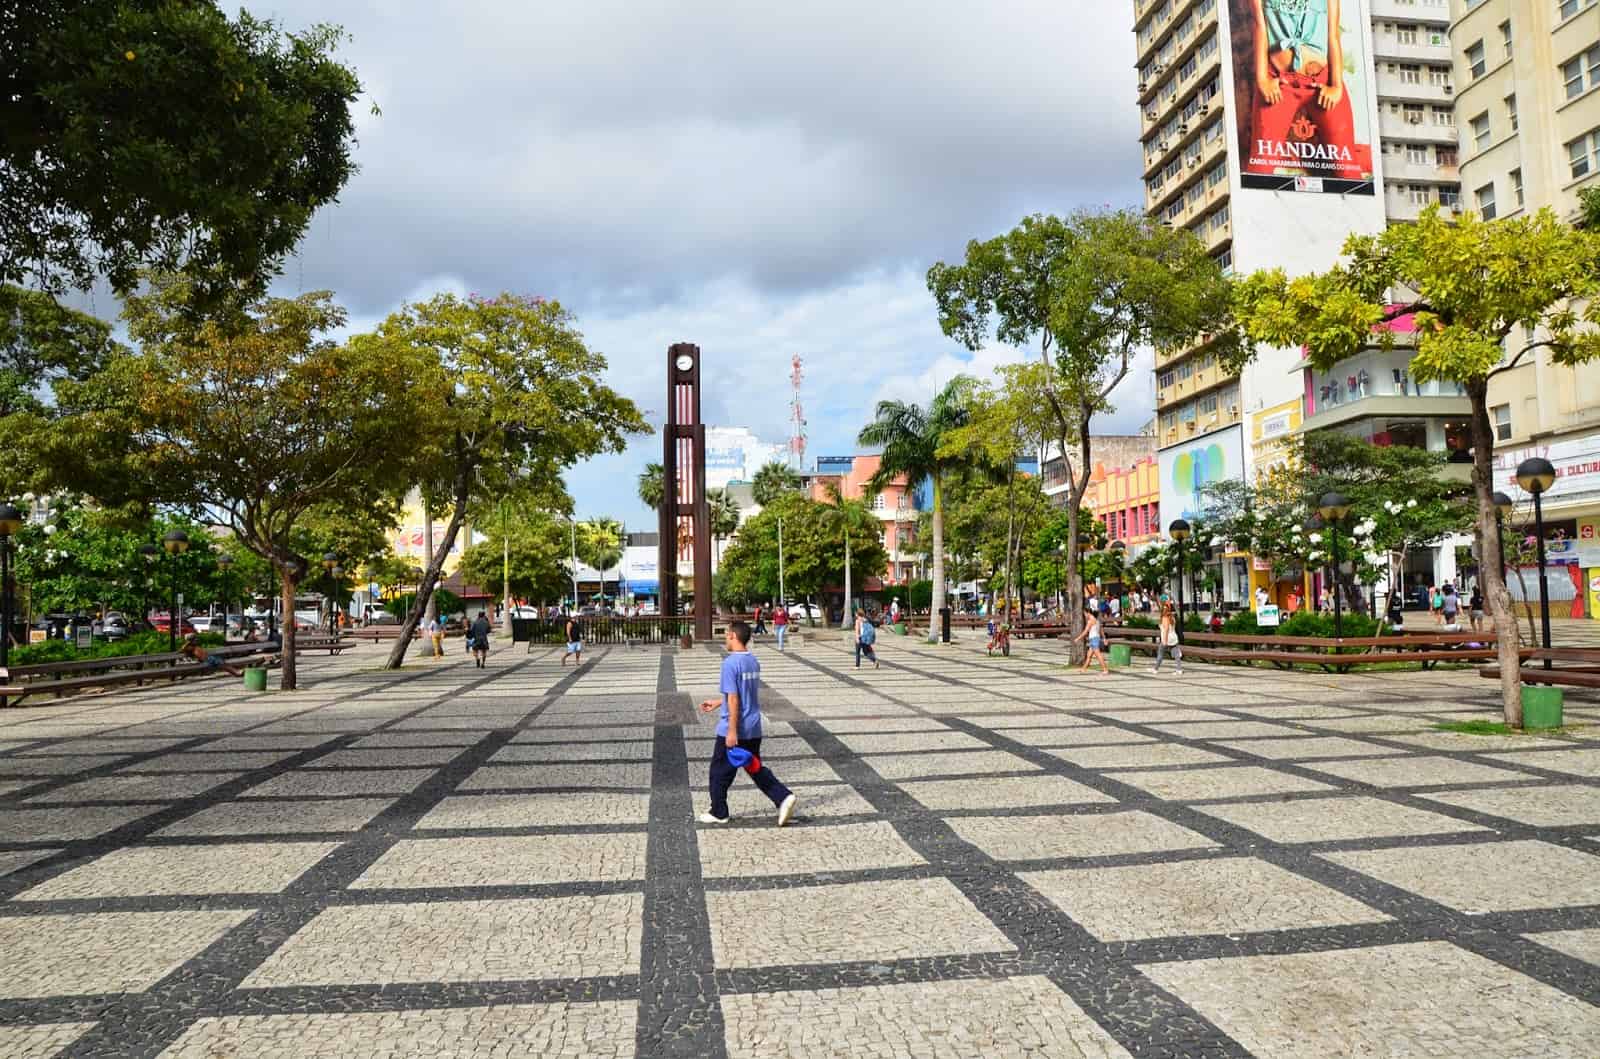 Praça do Ferreira in Fortaleza, Brazil